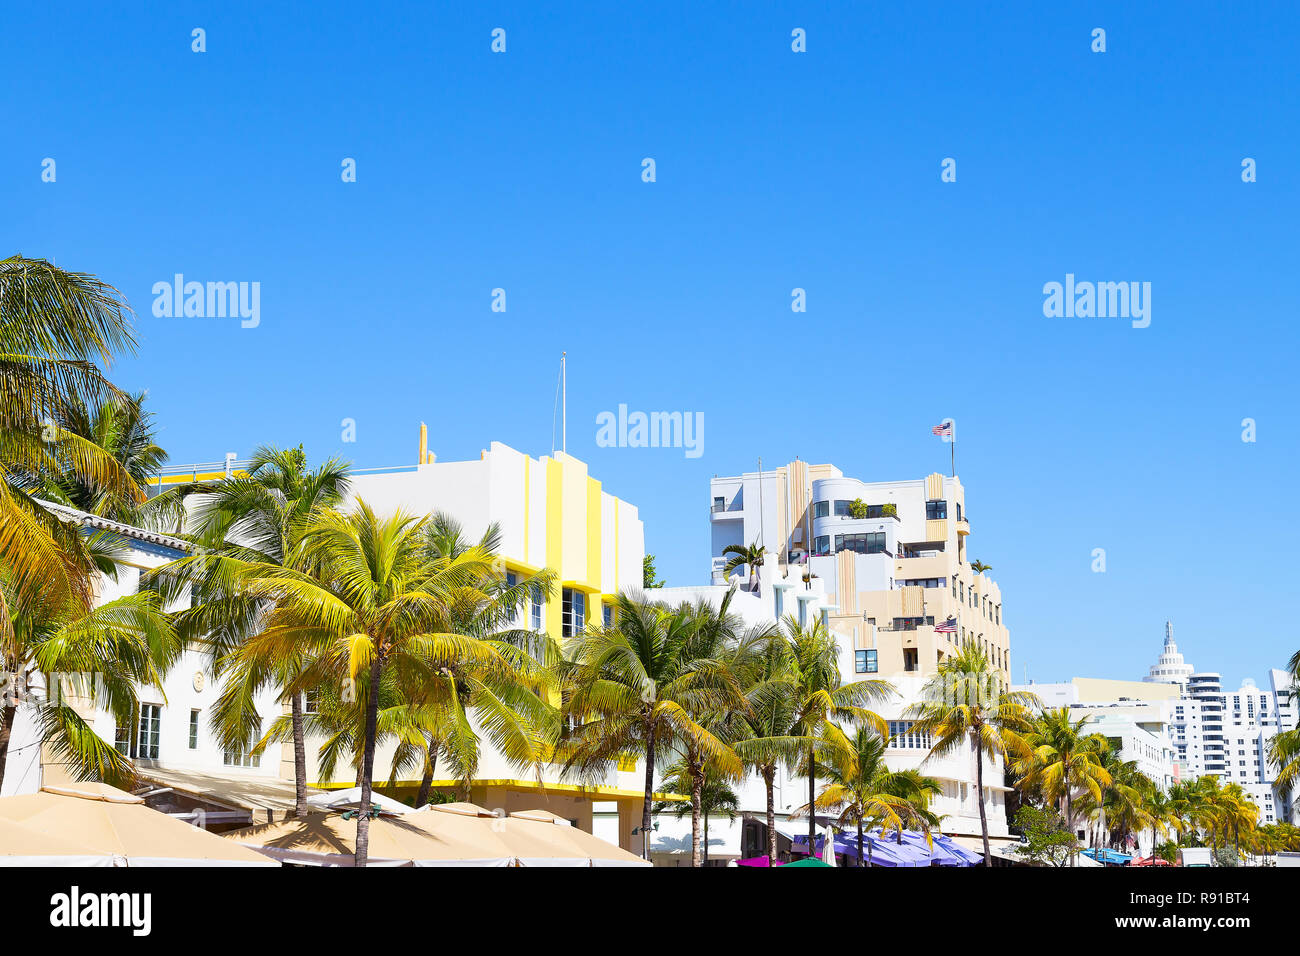 Bâtiments modernes de Miami Beach, en Floride. Rue avec des bâtiments art déco, des palmiers et des parasols colorés street. Banque D'Images